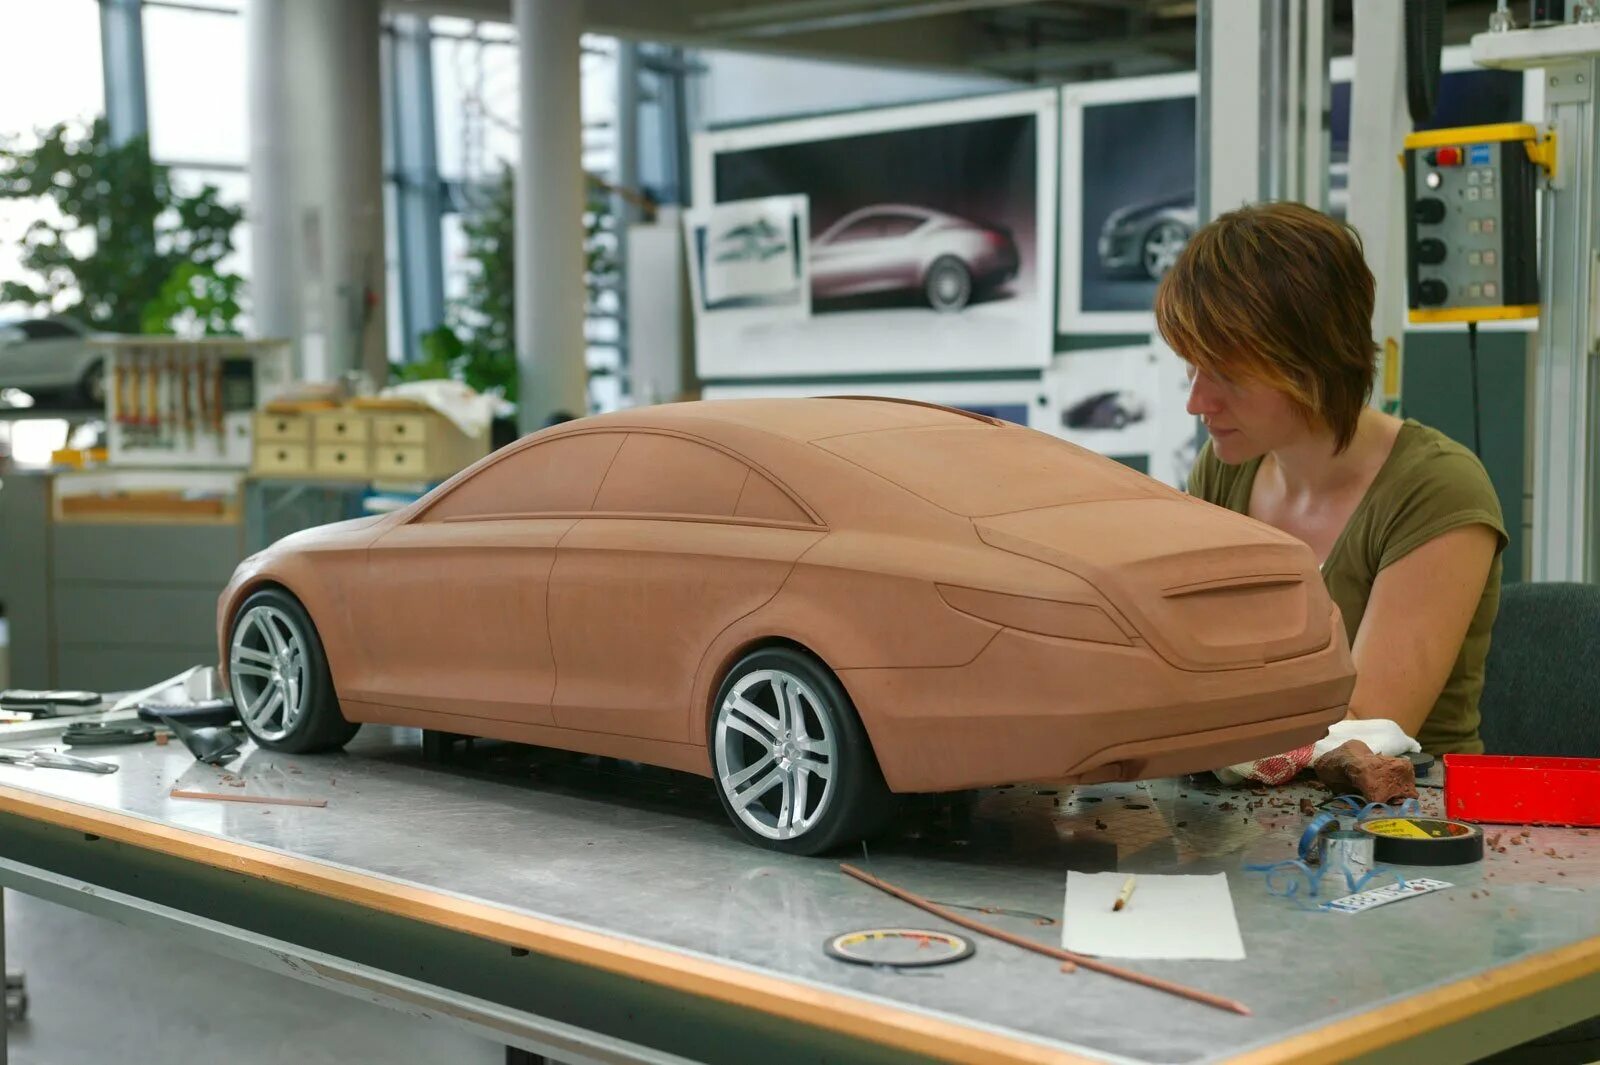 3d моделирование в автопромышленности. Муляж автомобиля. Пластилиновые макеты автомобилей. Моделирование автомобилей. Включи где делают машины